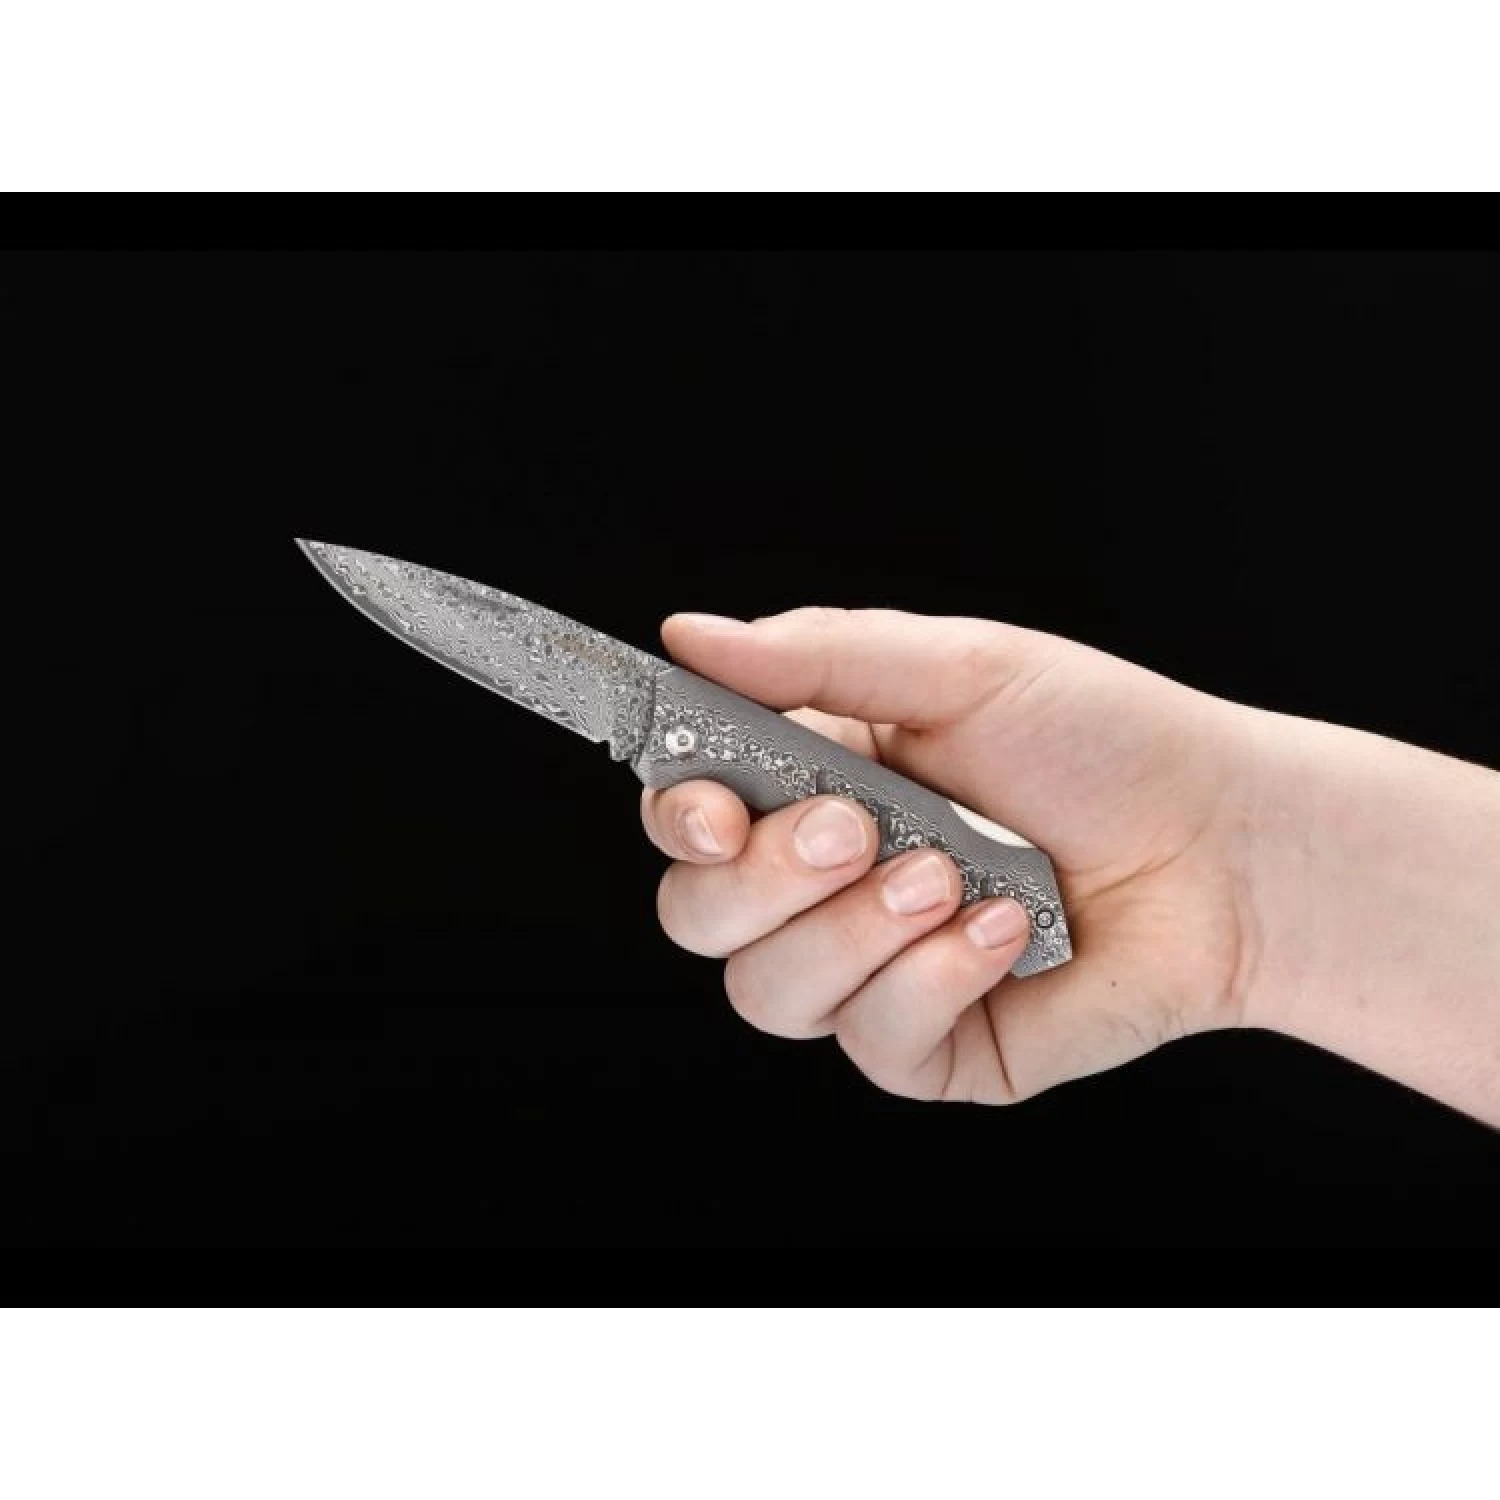 Нож складной BOKER DAMASCUS DOMINATOR BK01BO511DAM